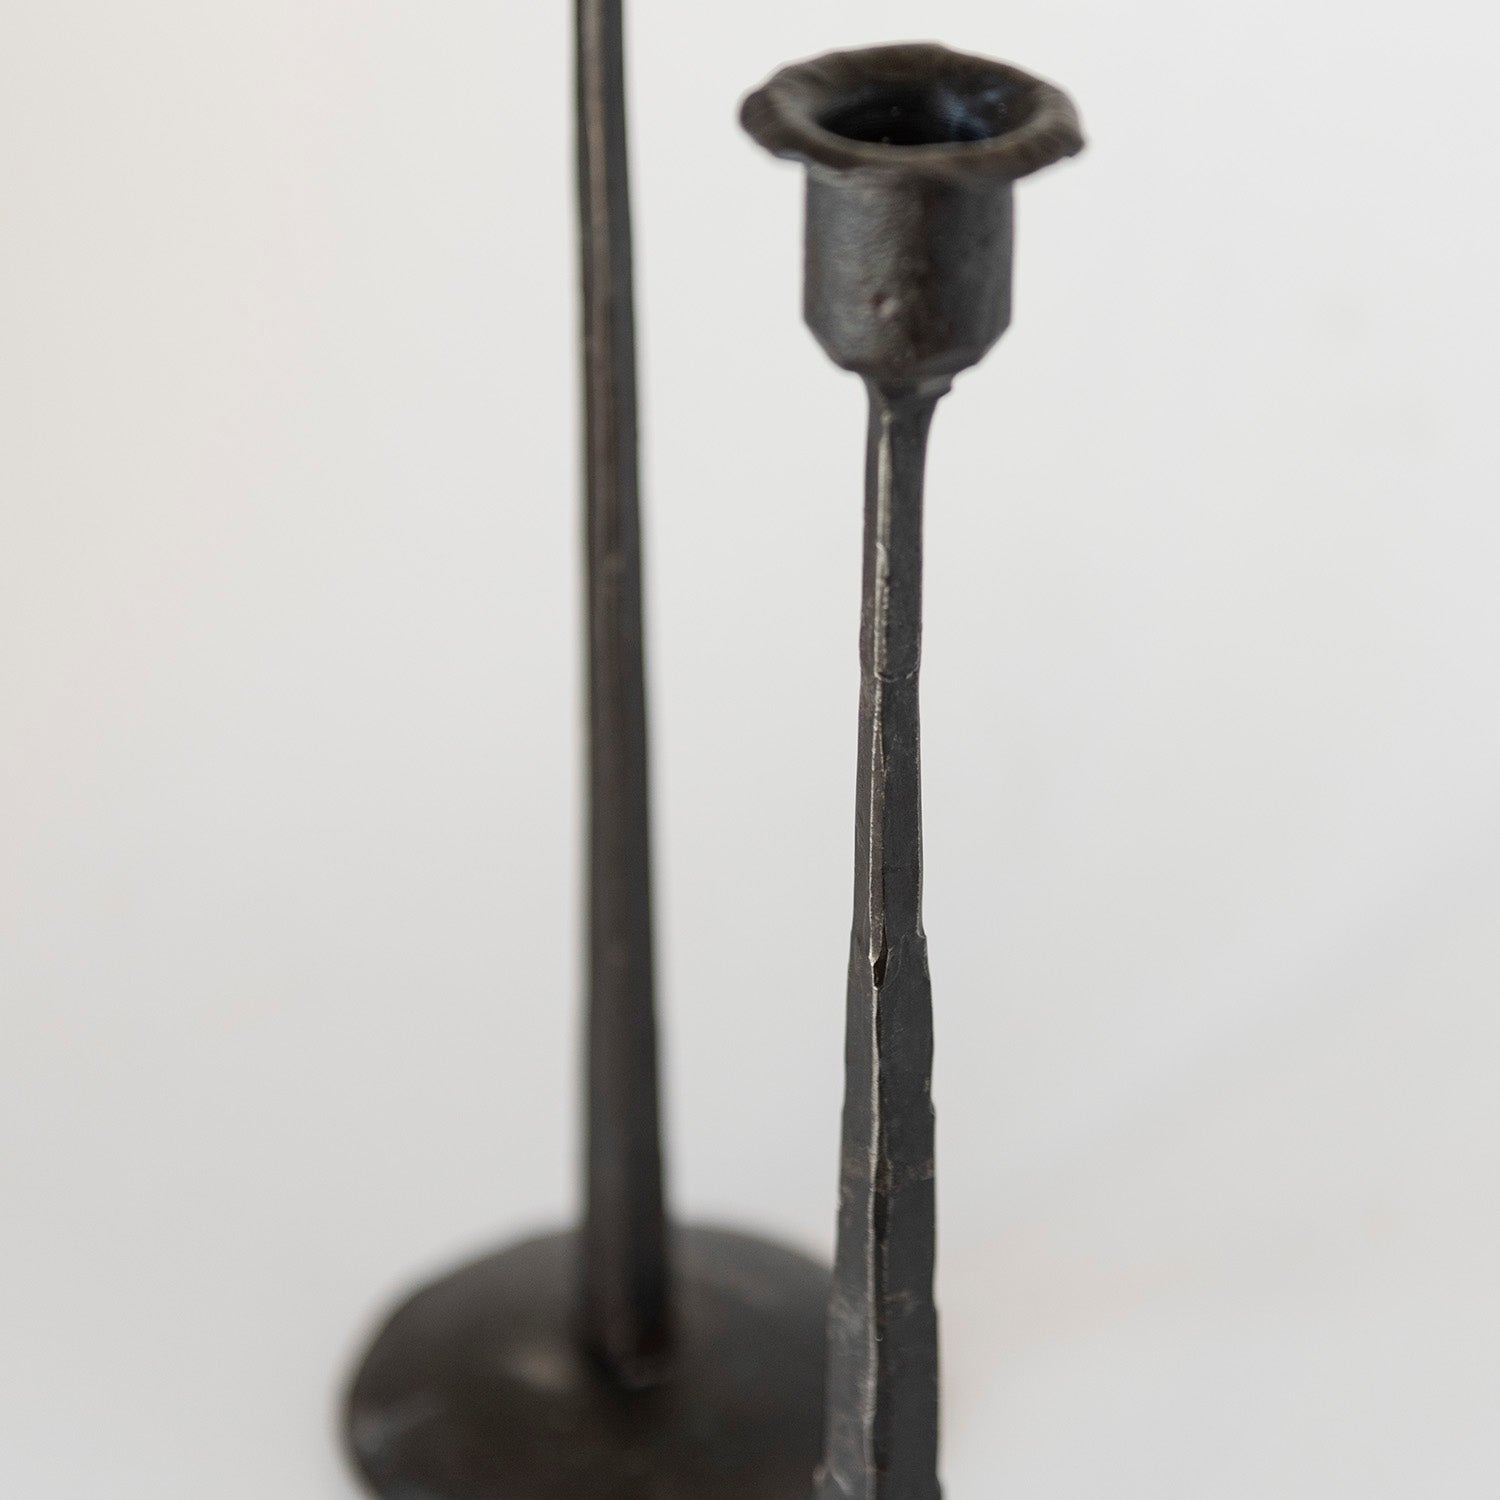 Iron candle holder